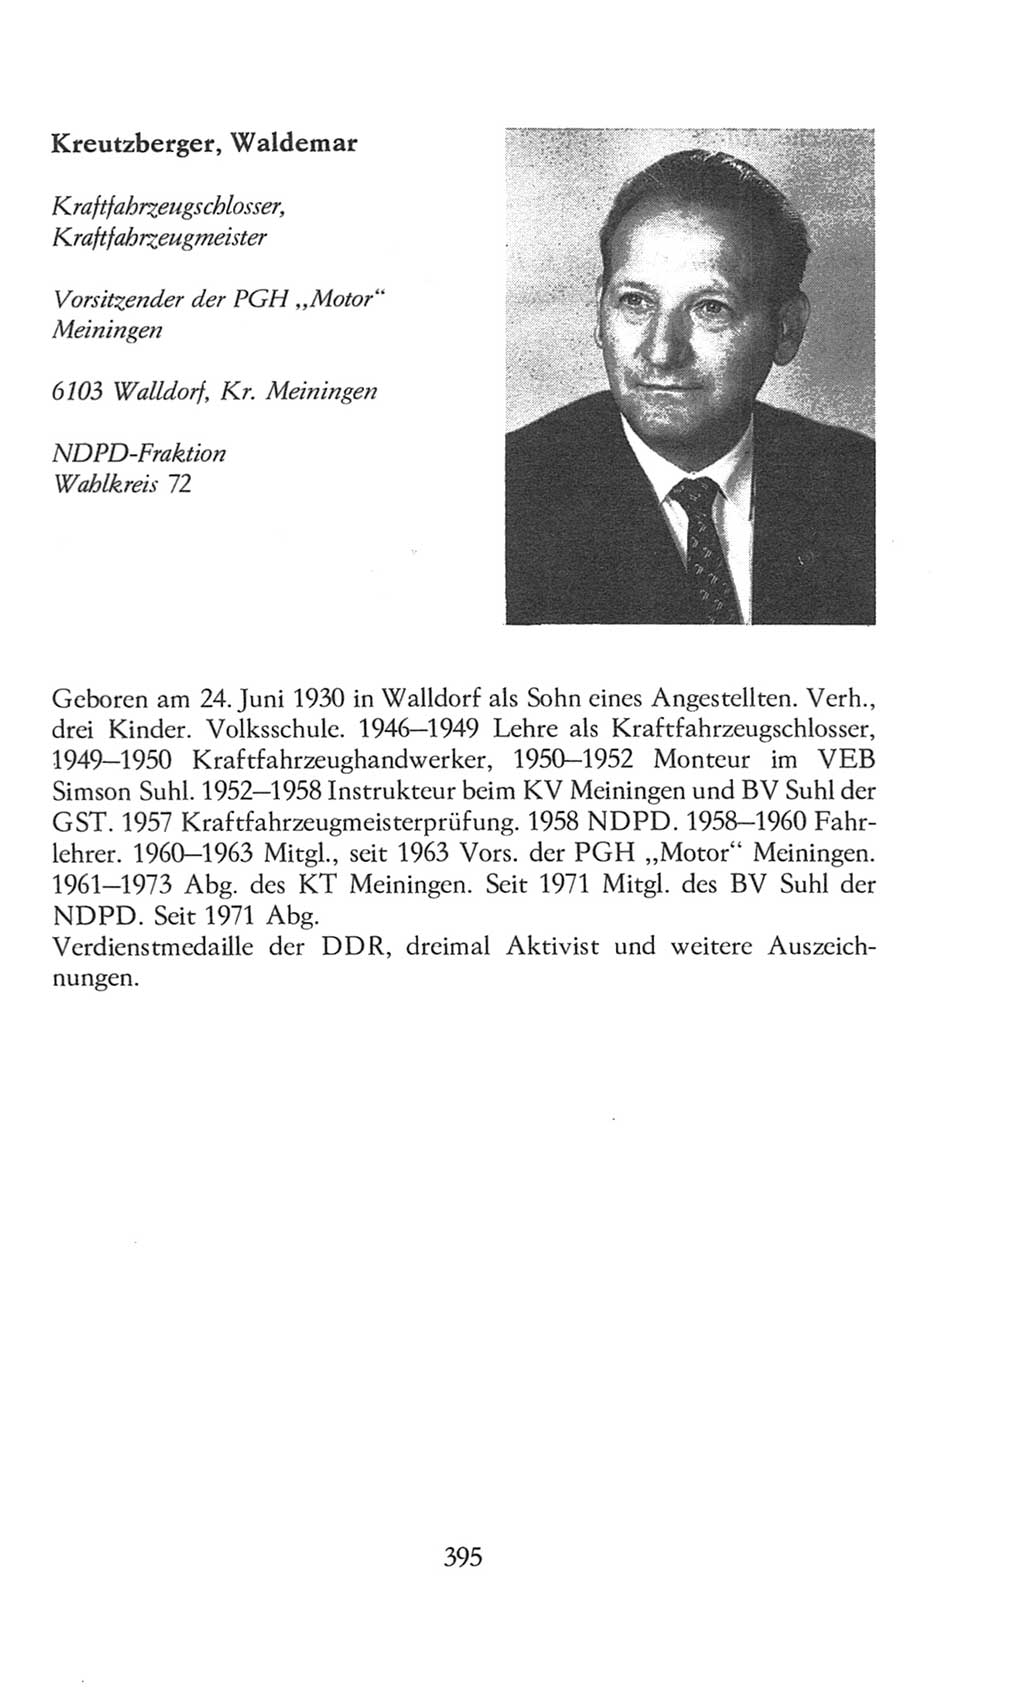 Volkskammer (VK) der Deutschen Demokratischen Republik (DDR), 8. Wahlperiode 1981-1986, Seite 395 (VK. DDR 8. WP. 1981-1986, S. 395)